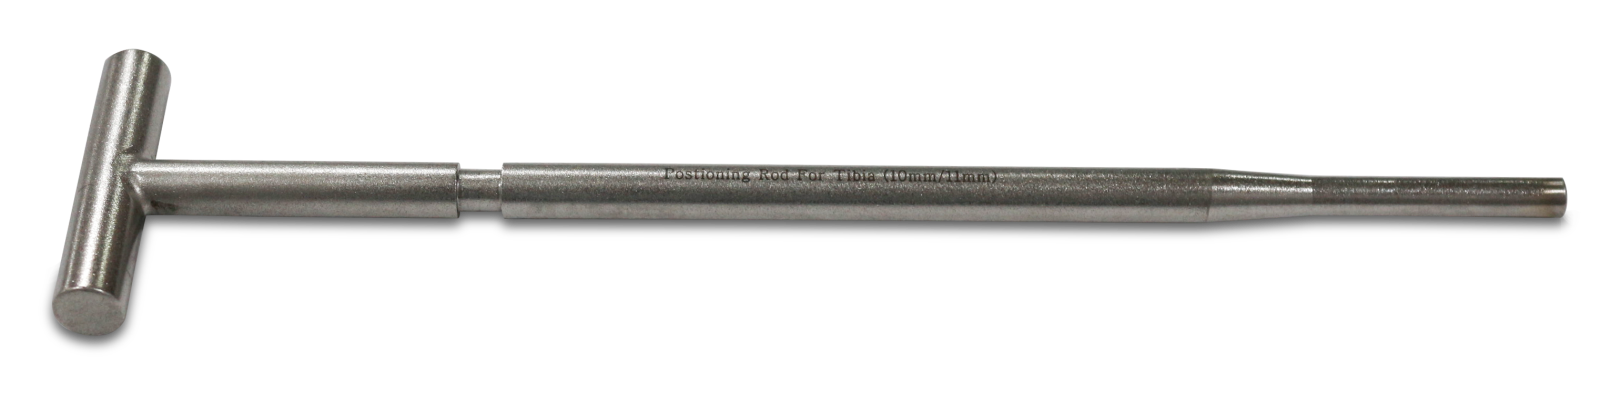 Positioning Rod Femur (11-12mm OD)